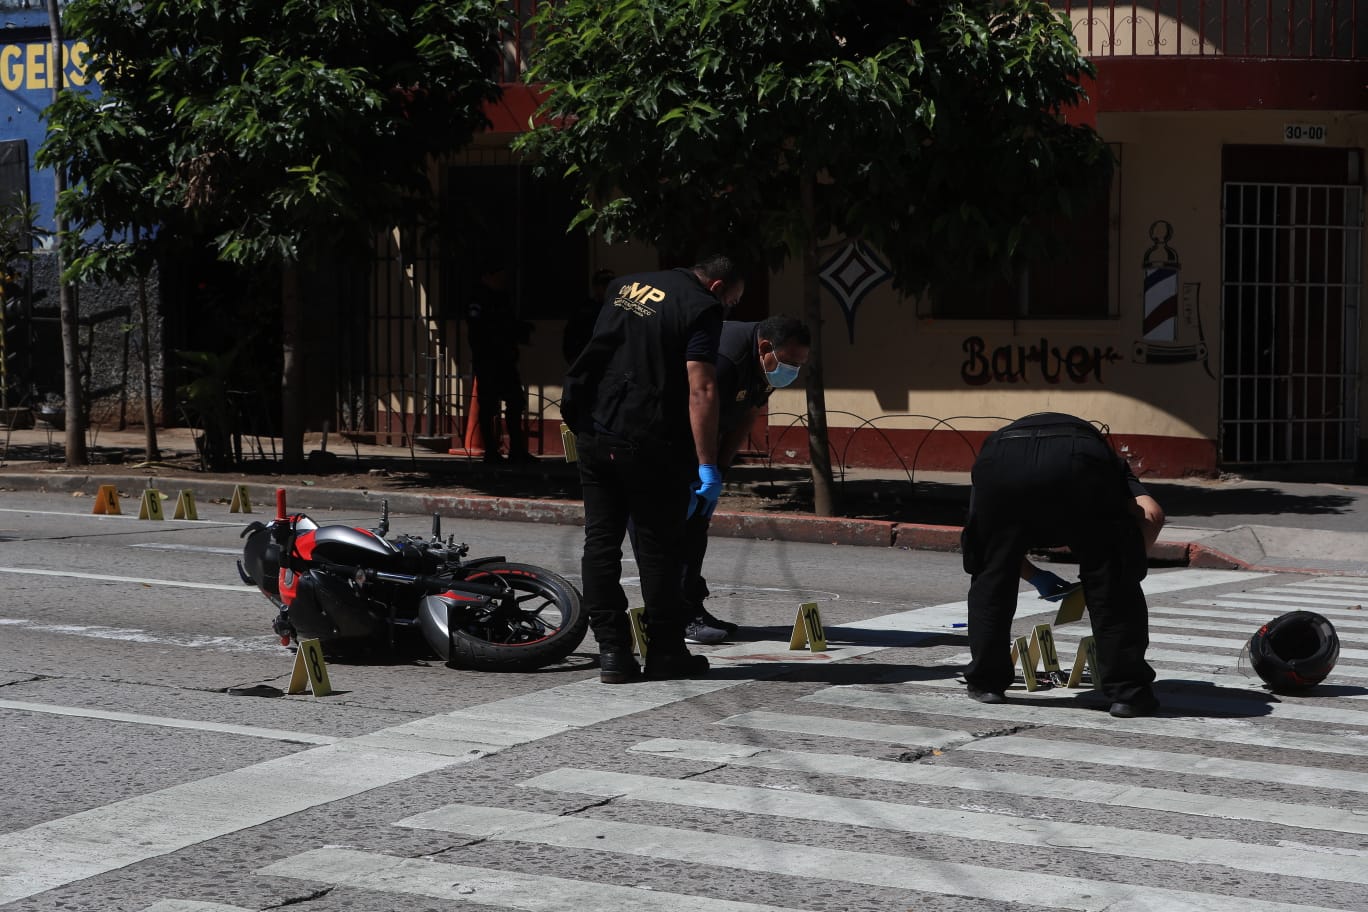 Investigadores y peritos forenses procesaron la escena del crimen, recolectando evidencias. (Foto: Hemeroteca Prensa Libre)